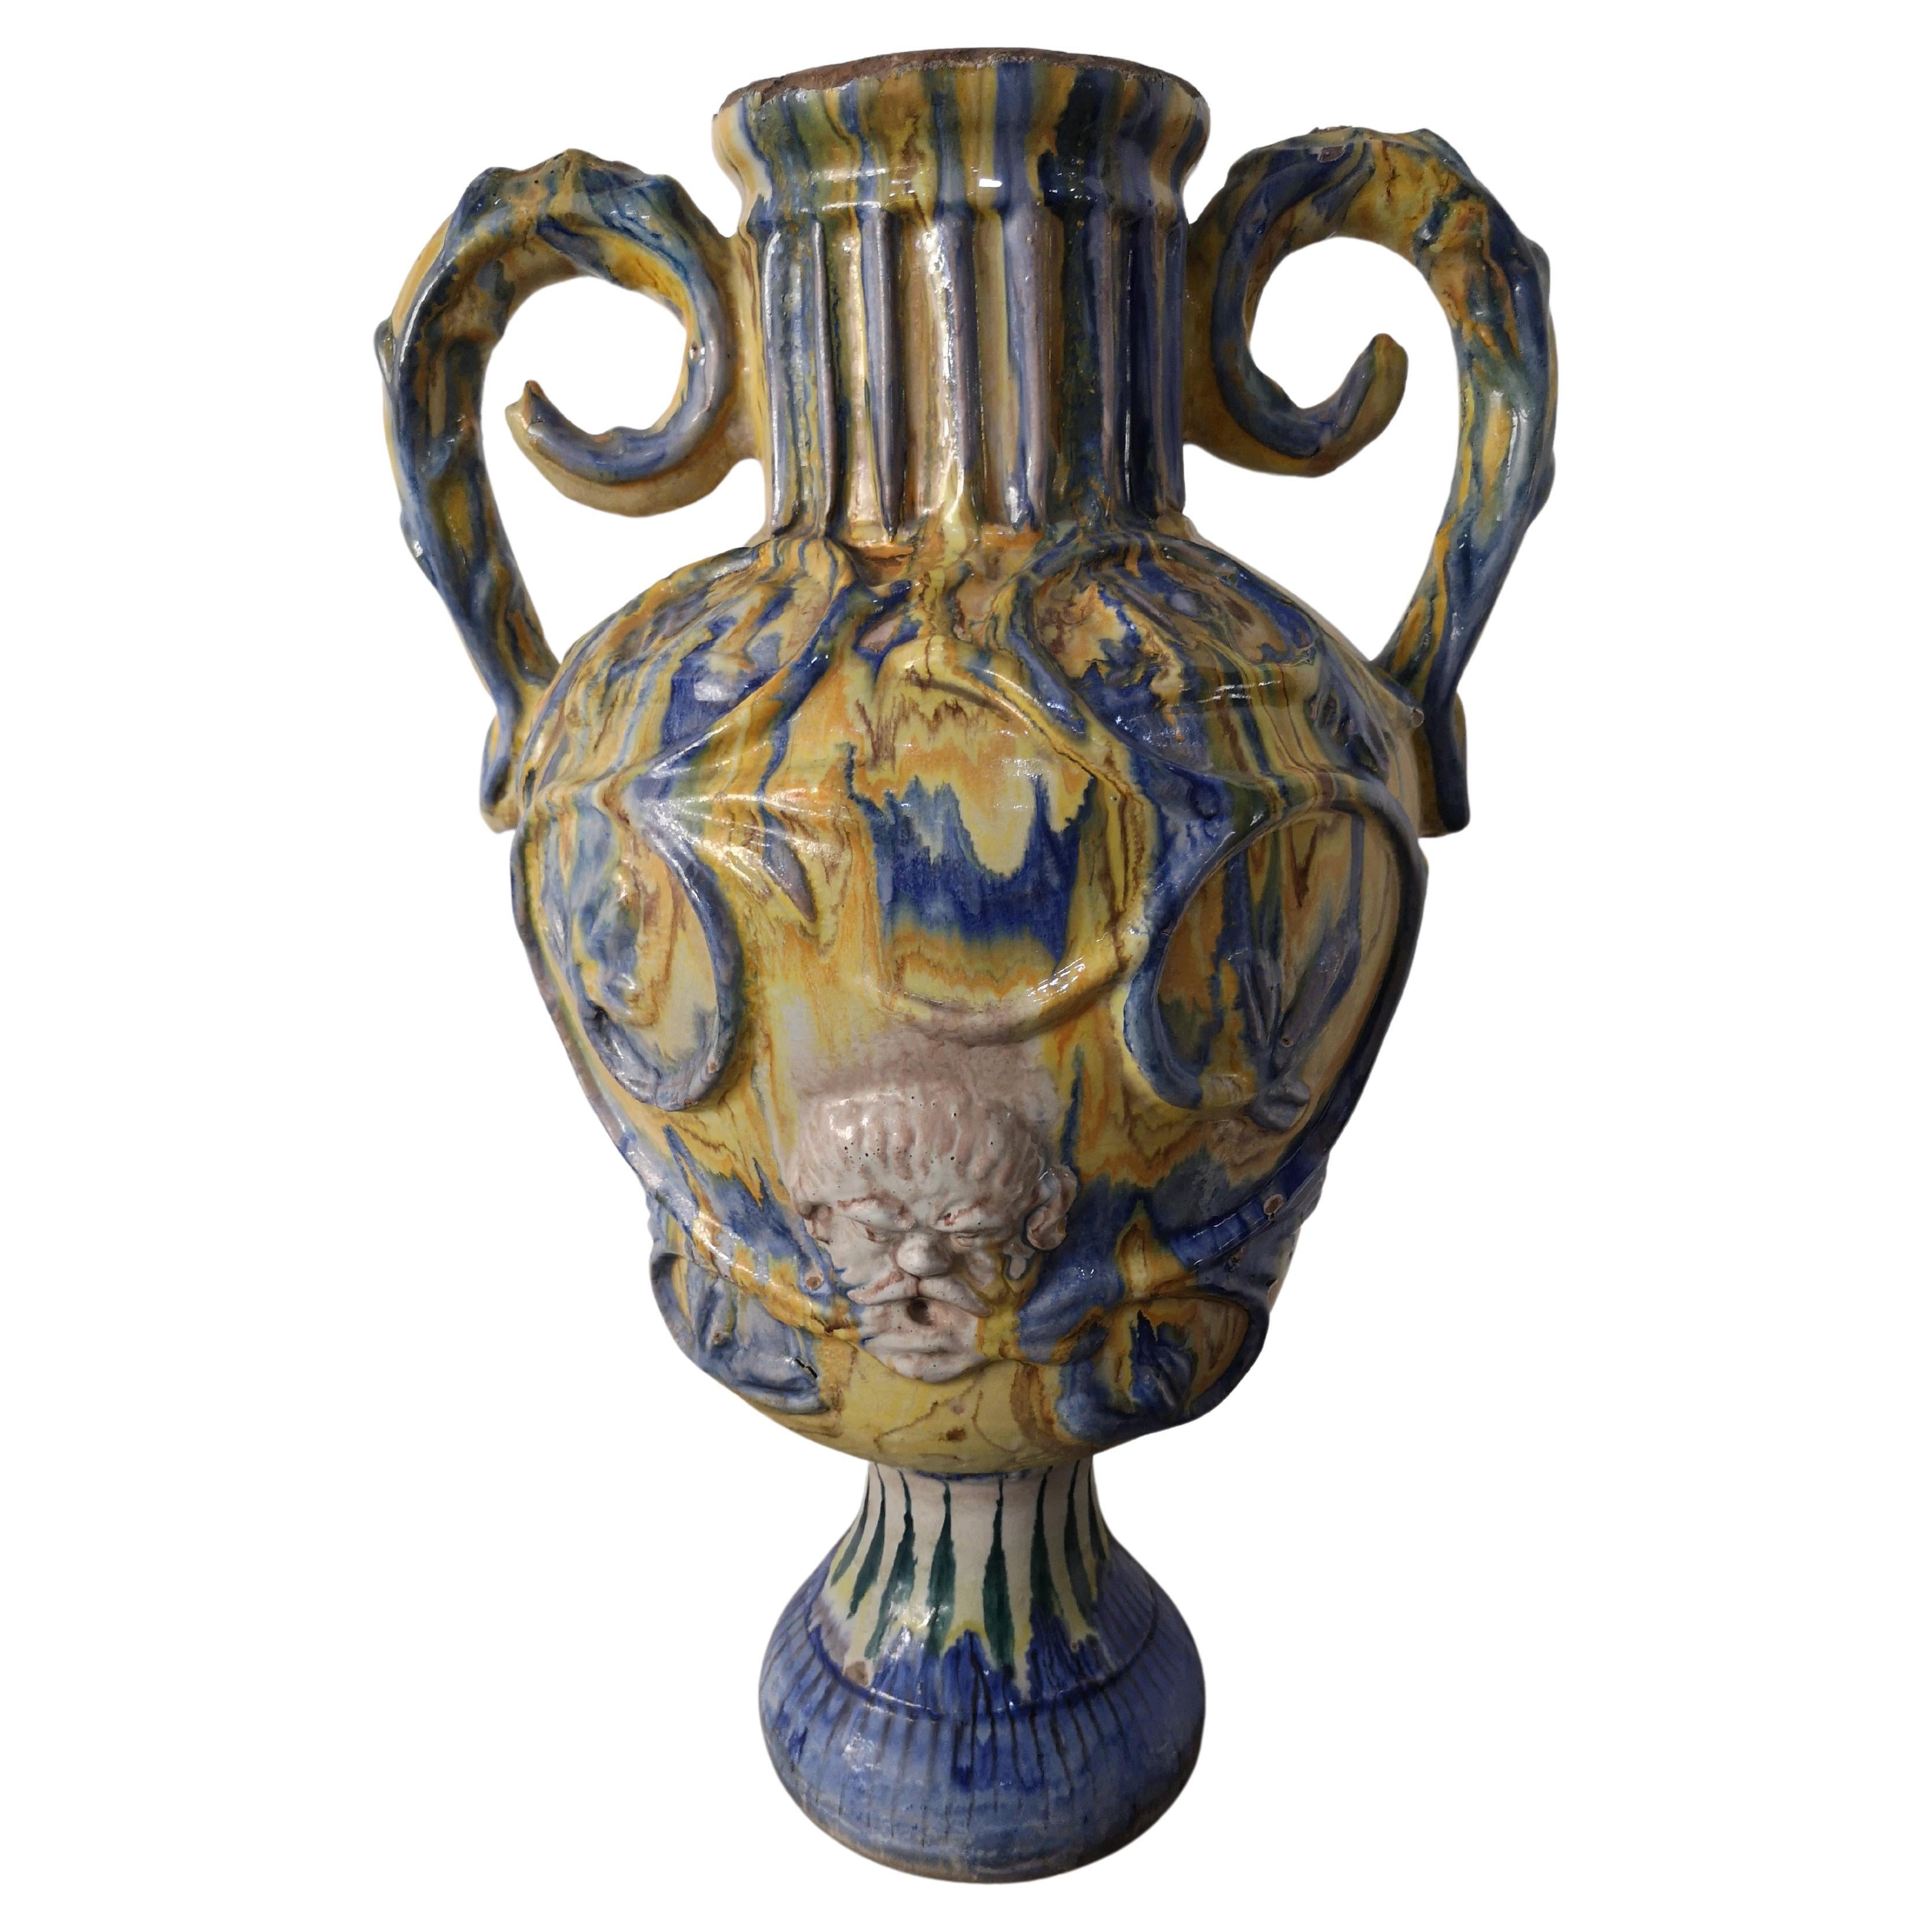 Caltagirone ceramic amphora, mid-19th century